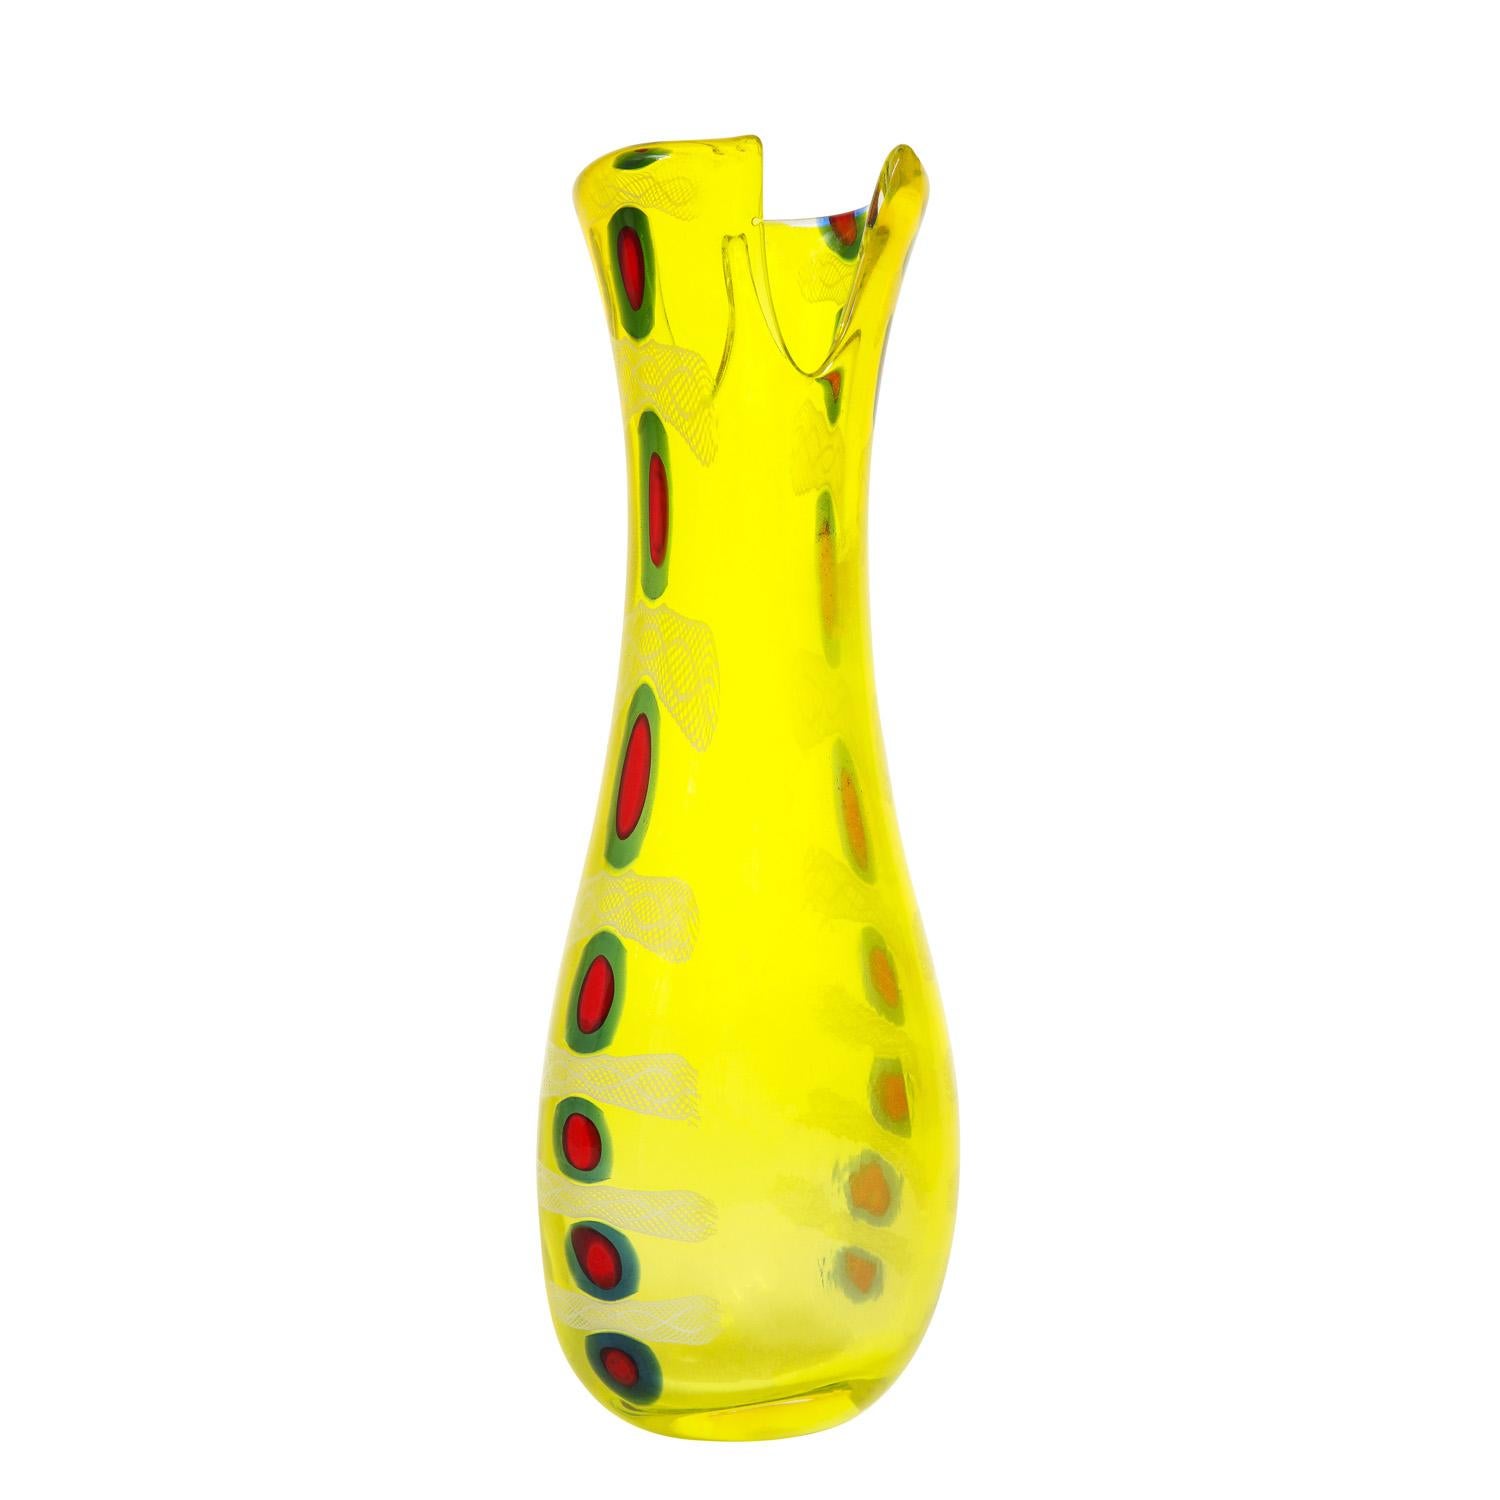 Handgeblasene Vase aus der Serie Murrine Incatenate, gelbes Glas mit roten und blauen Murrhinen, von Anzolo Fuga für AVEM, Murano Italien, um 1959. Diese Murrine Incatanate sind kühne, grafische und einzigartige Kunstwerke eines der bedeutendsten